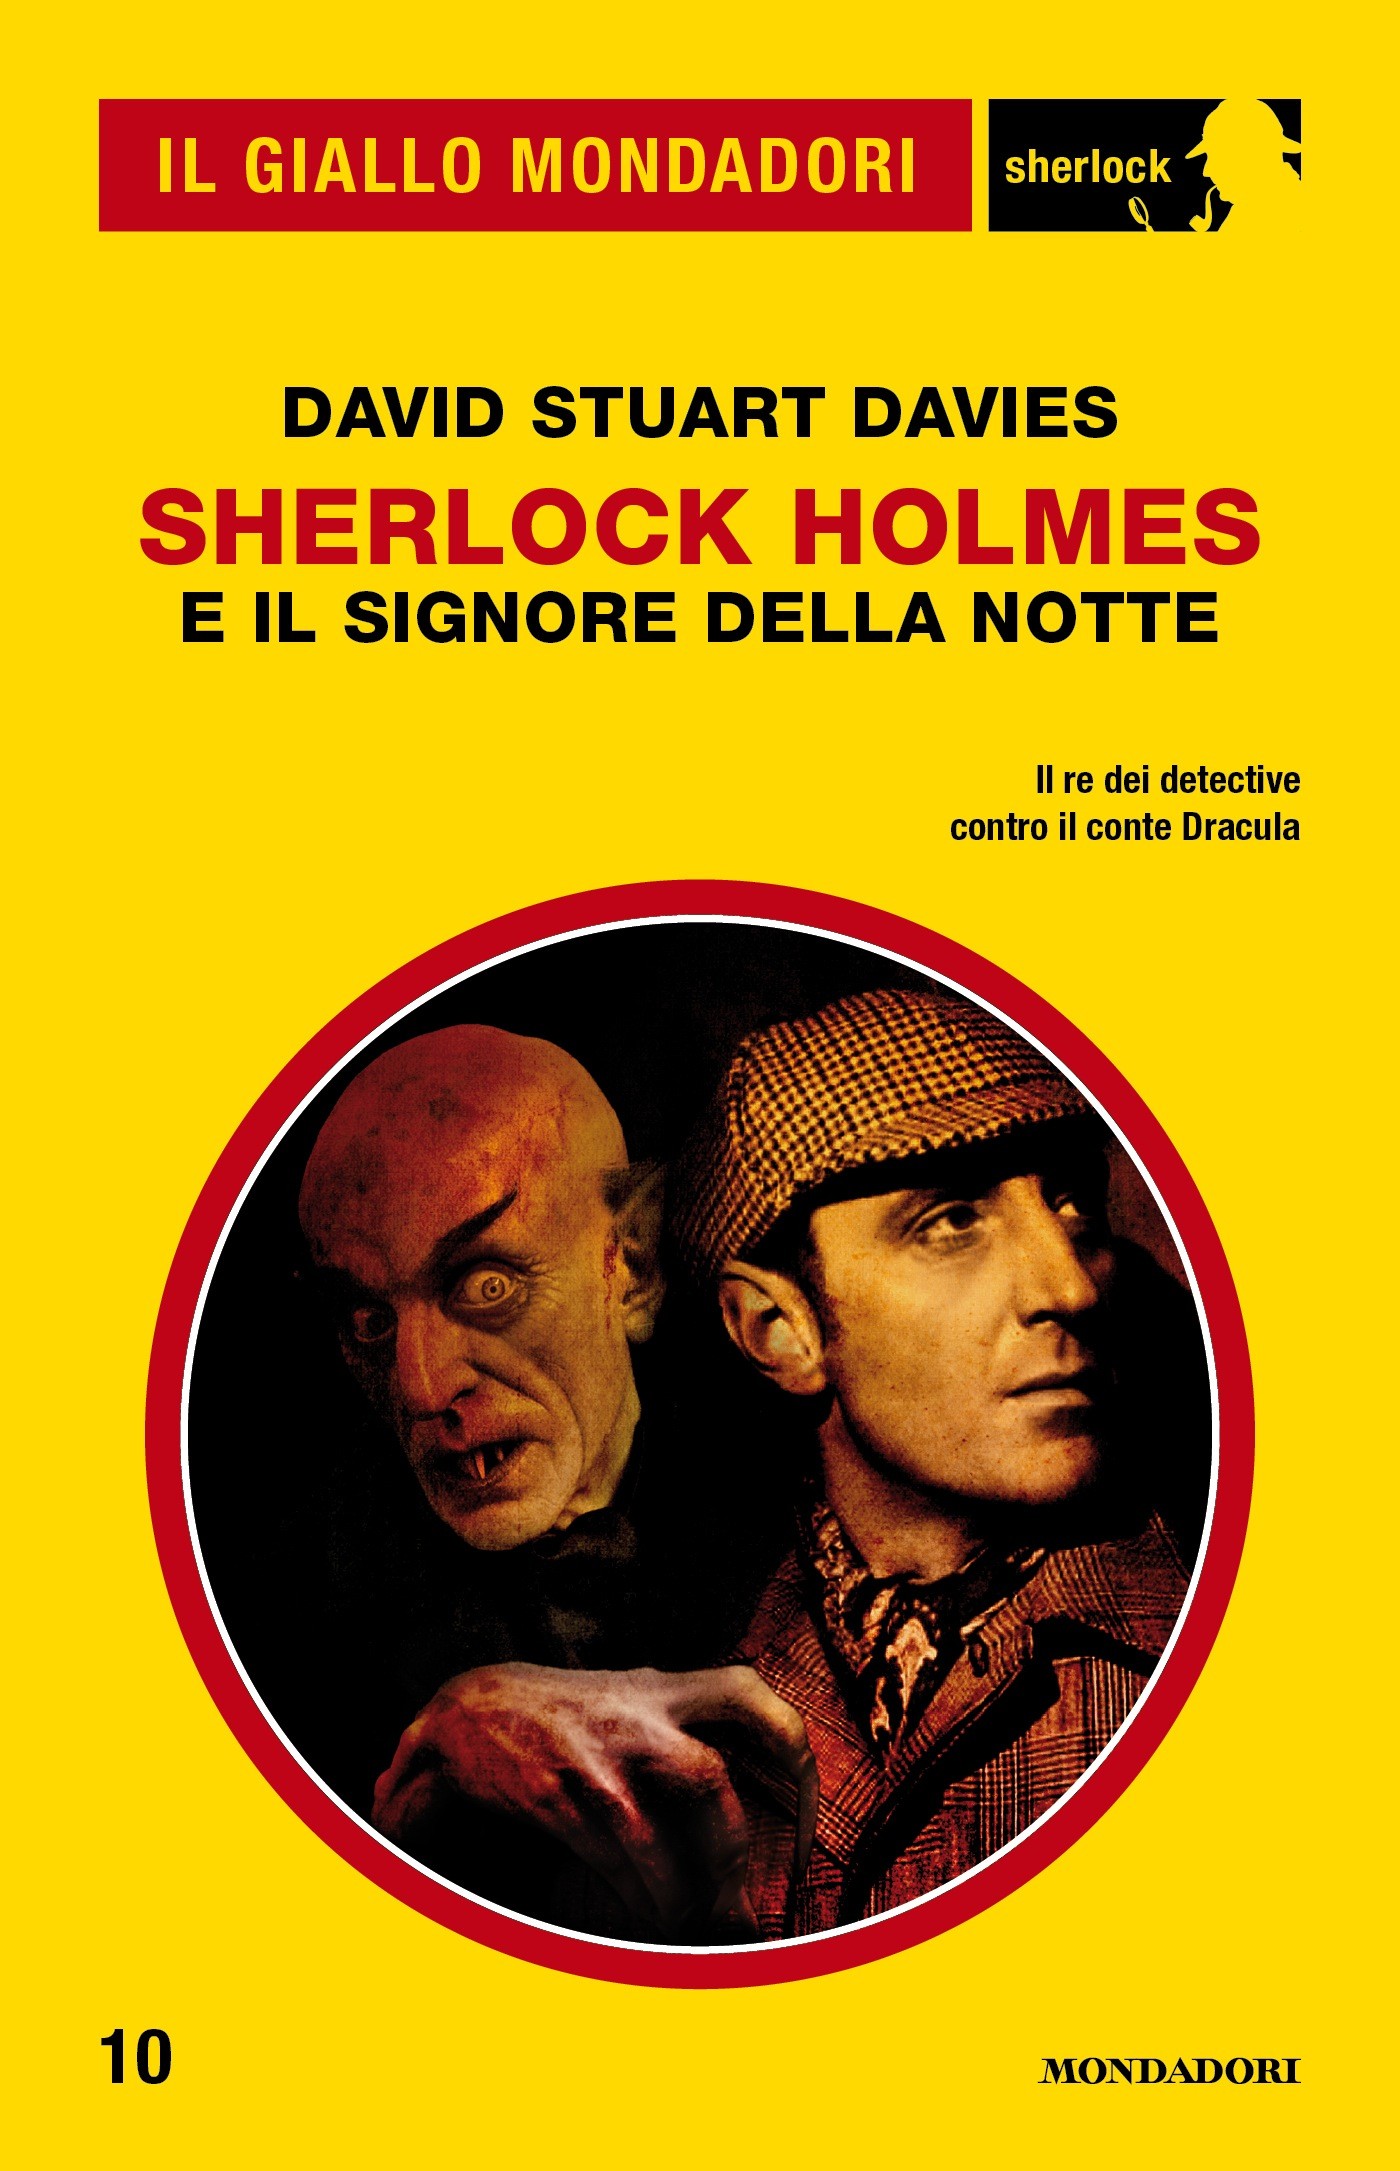 Sherlock Holmes e il signore della notte (Il Giallo Mondadori Sherlock) - Librerie.coop